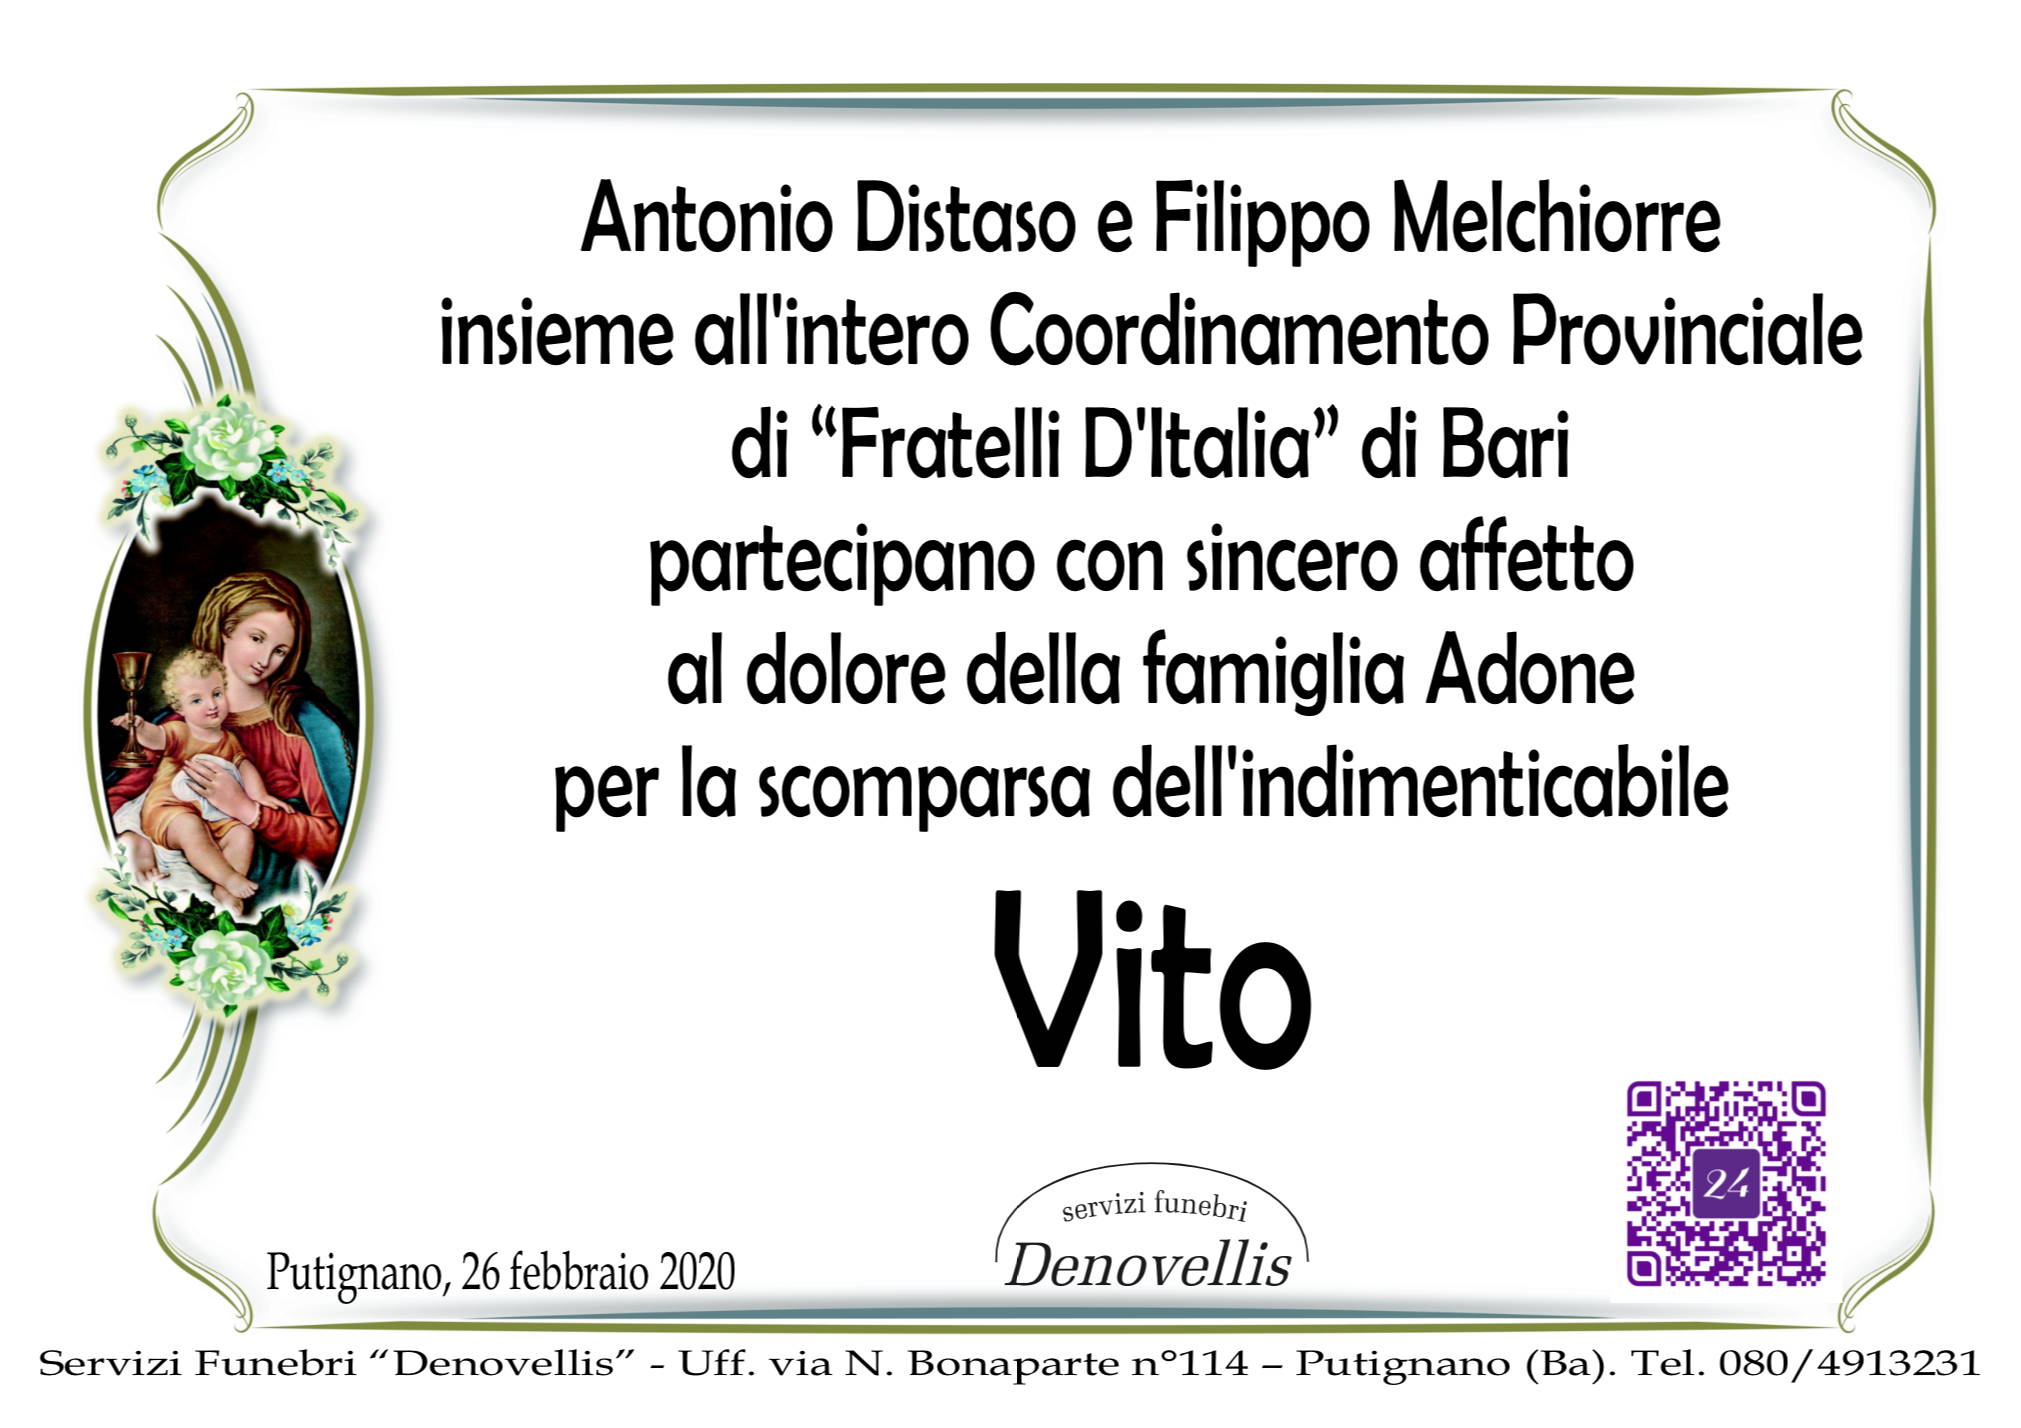 Coordinamento Provinciale “Fratelli D’Italia” Bari